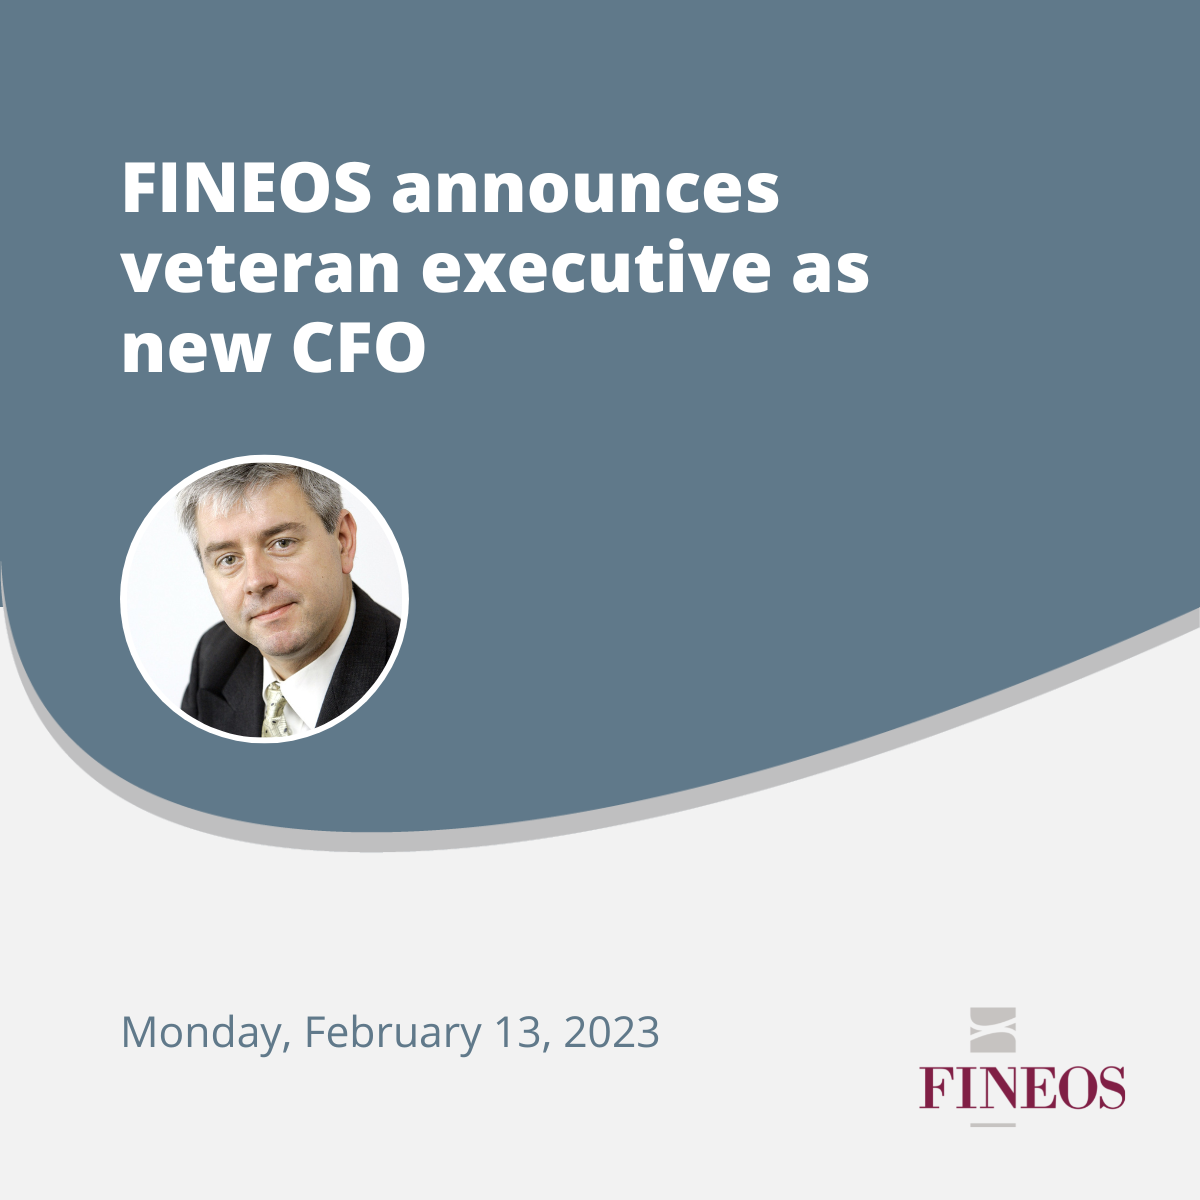 FINEOS announces veteran executive as new CFO